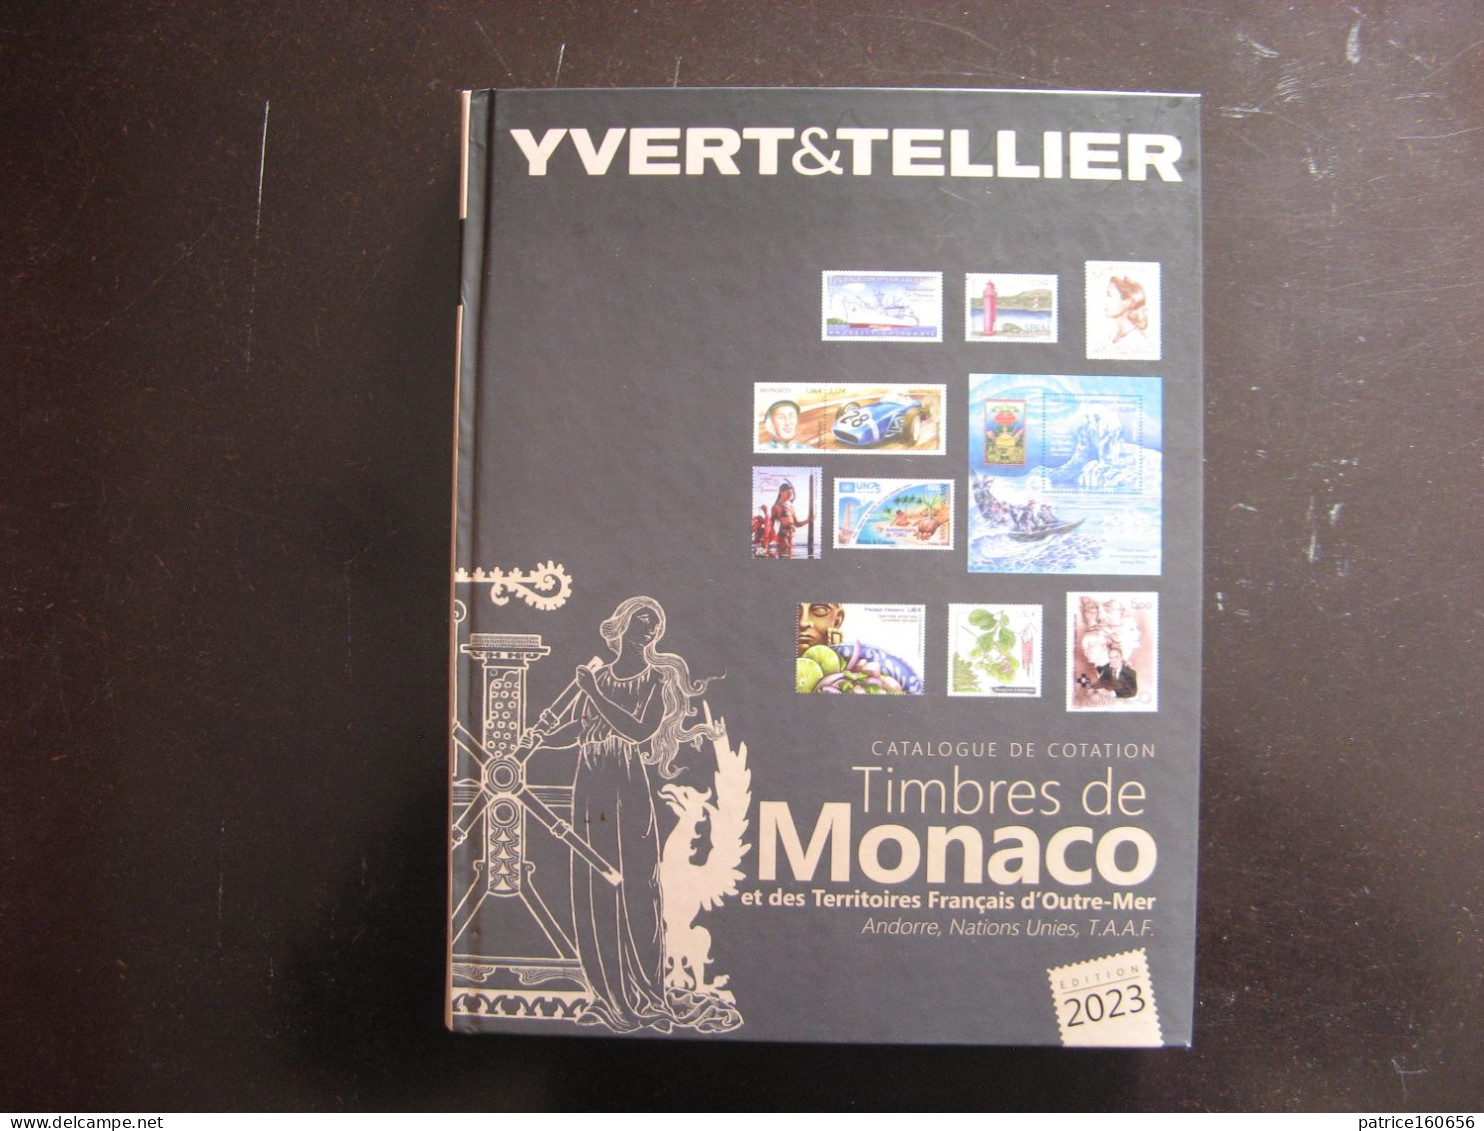 CATALOGUE YVERT ET TELLIER Des Timbres De Monaco, Andorre, N.U. Et Territoires Français D'Outre-Mer. Edition De 2023 . - Bibliography